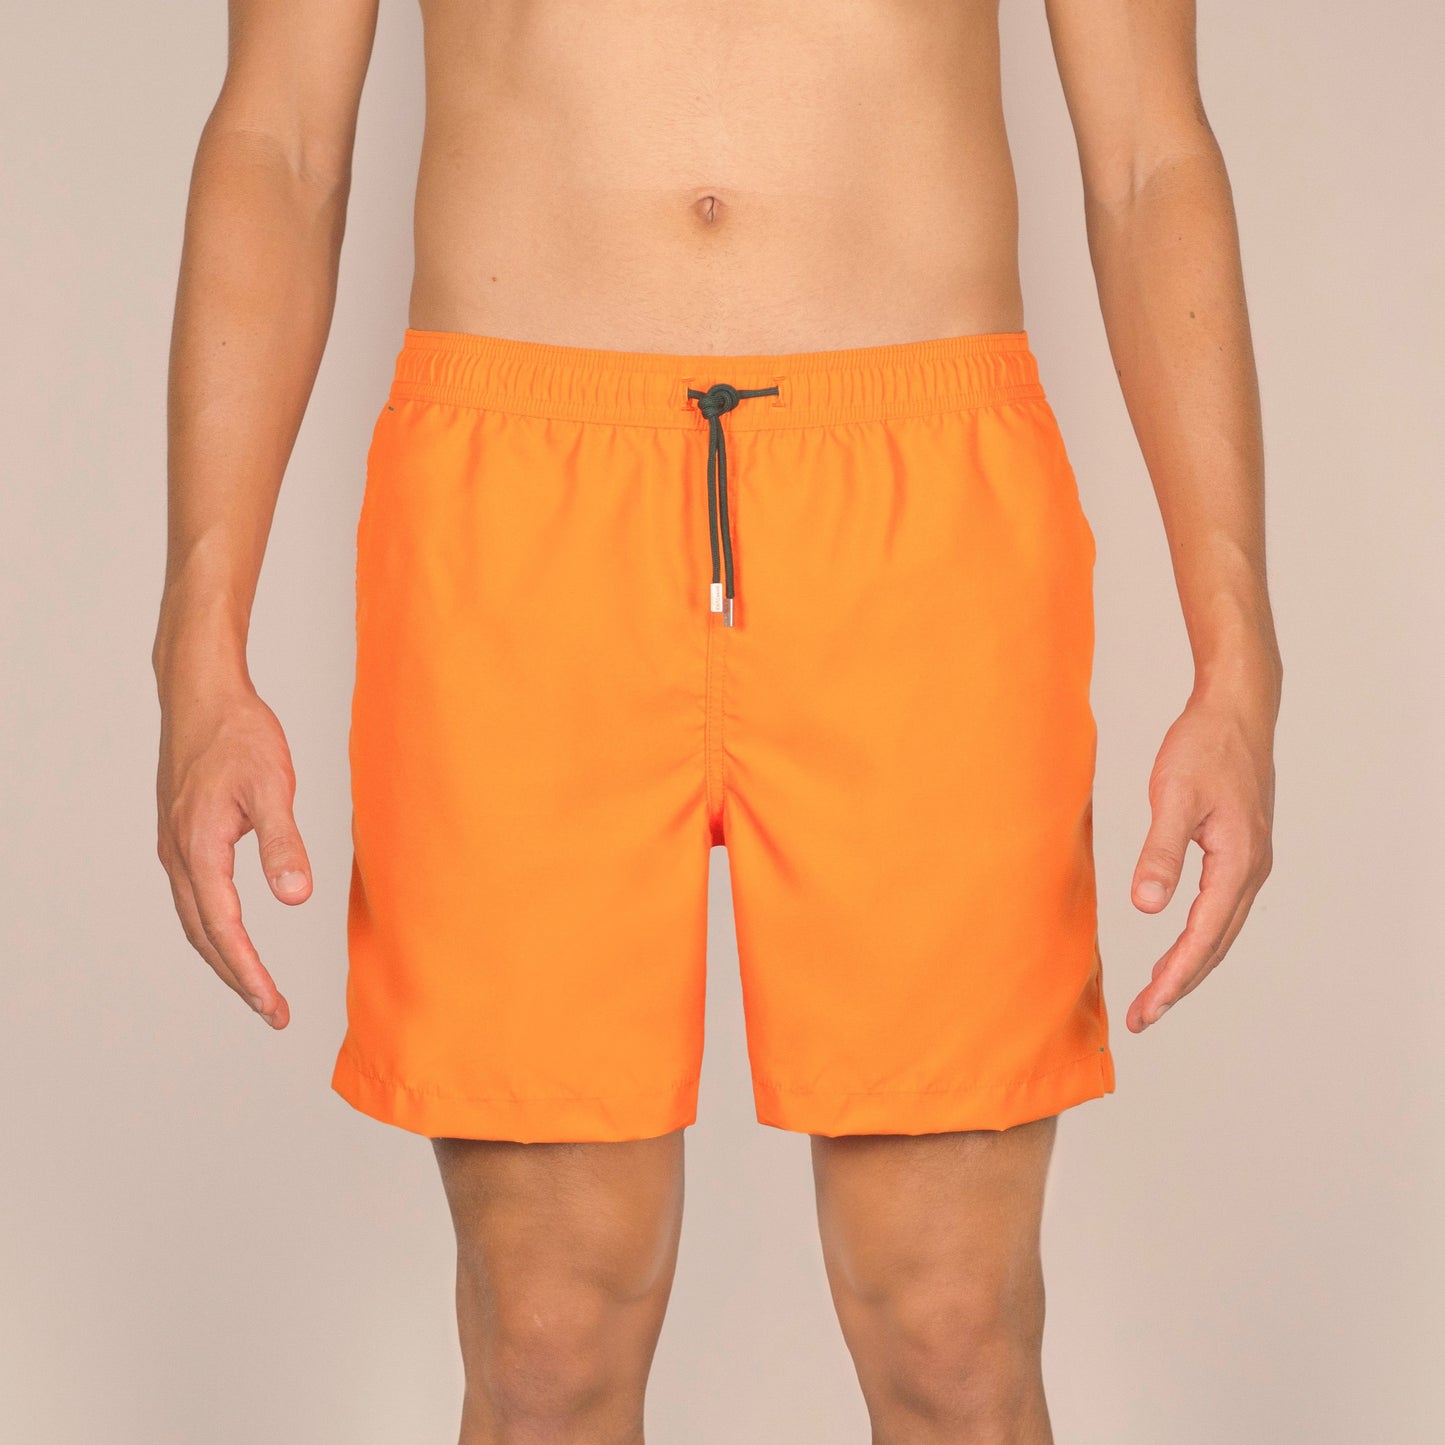 Men's Tangerine Swim Trunks